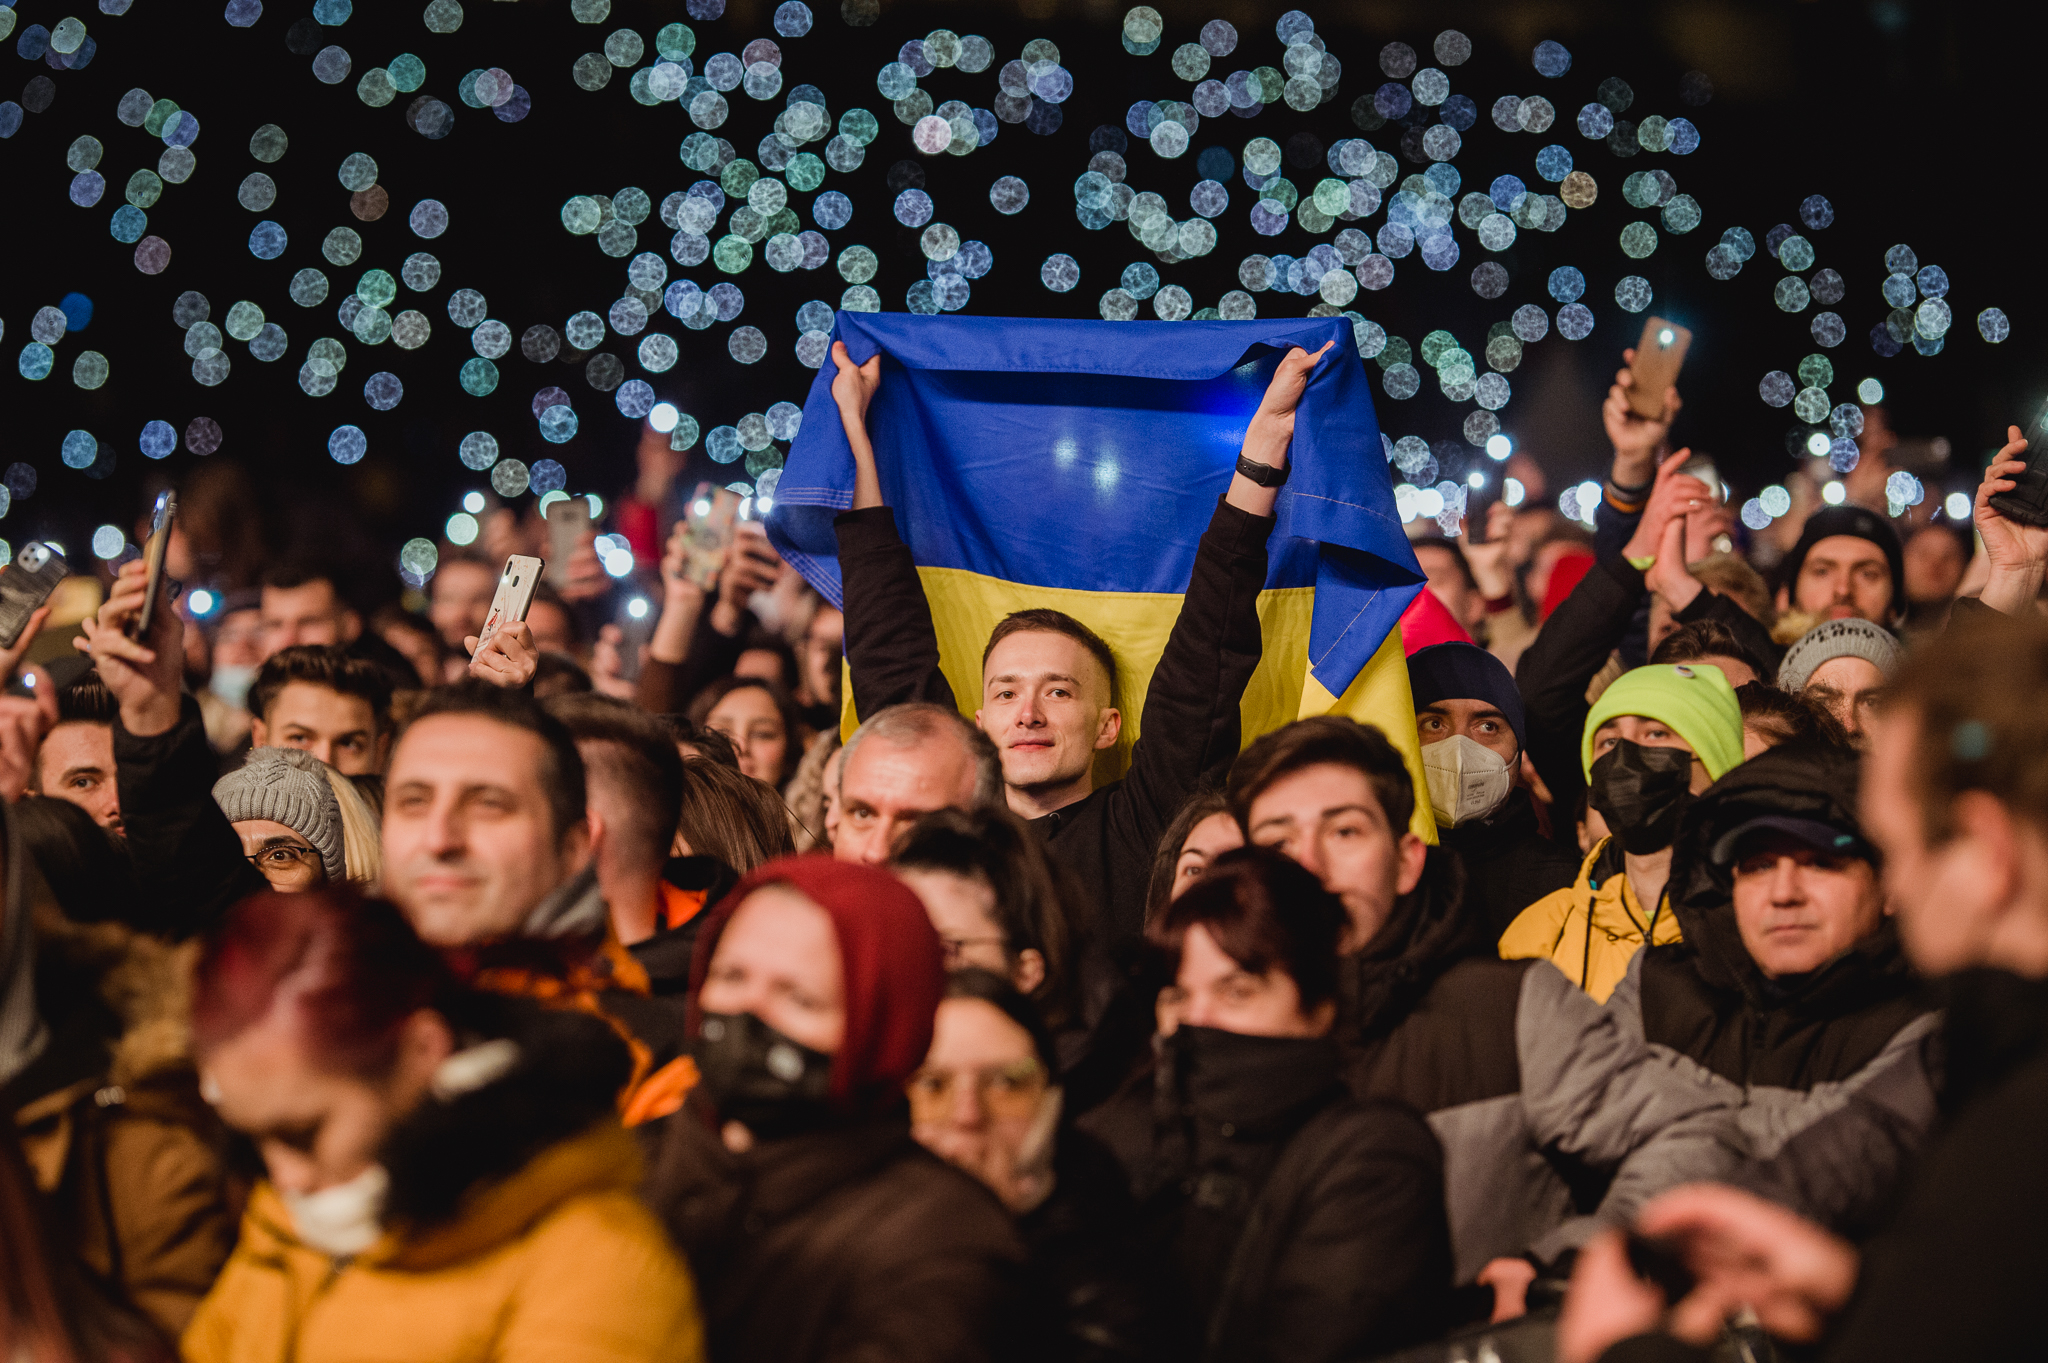 Seară plină de emoții la concertul caritabil WE ARE ONE. 4,5 milioane de lei se vor duce către ucraineni - Imaginea 1